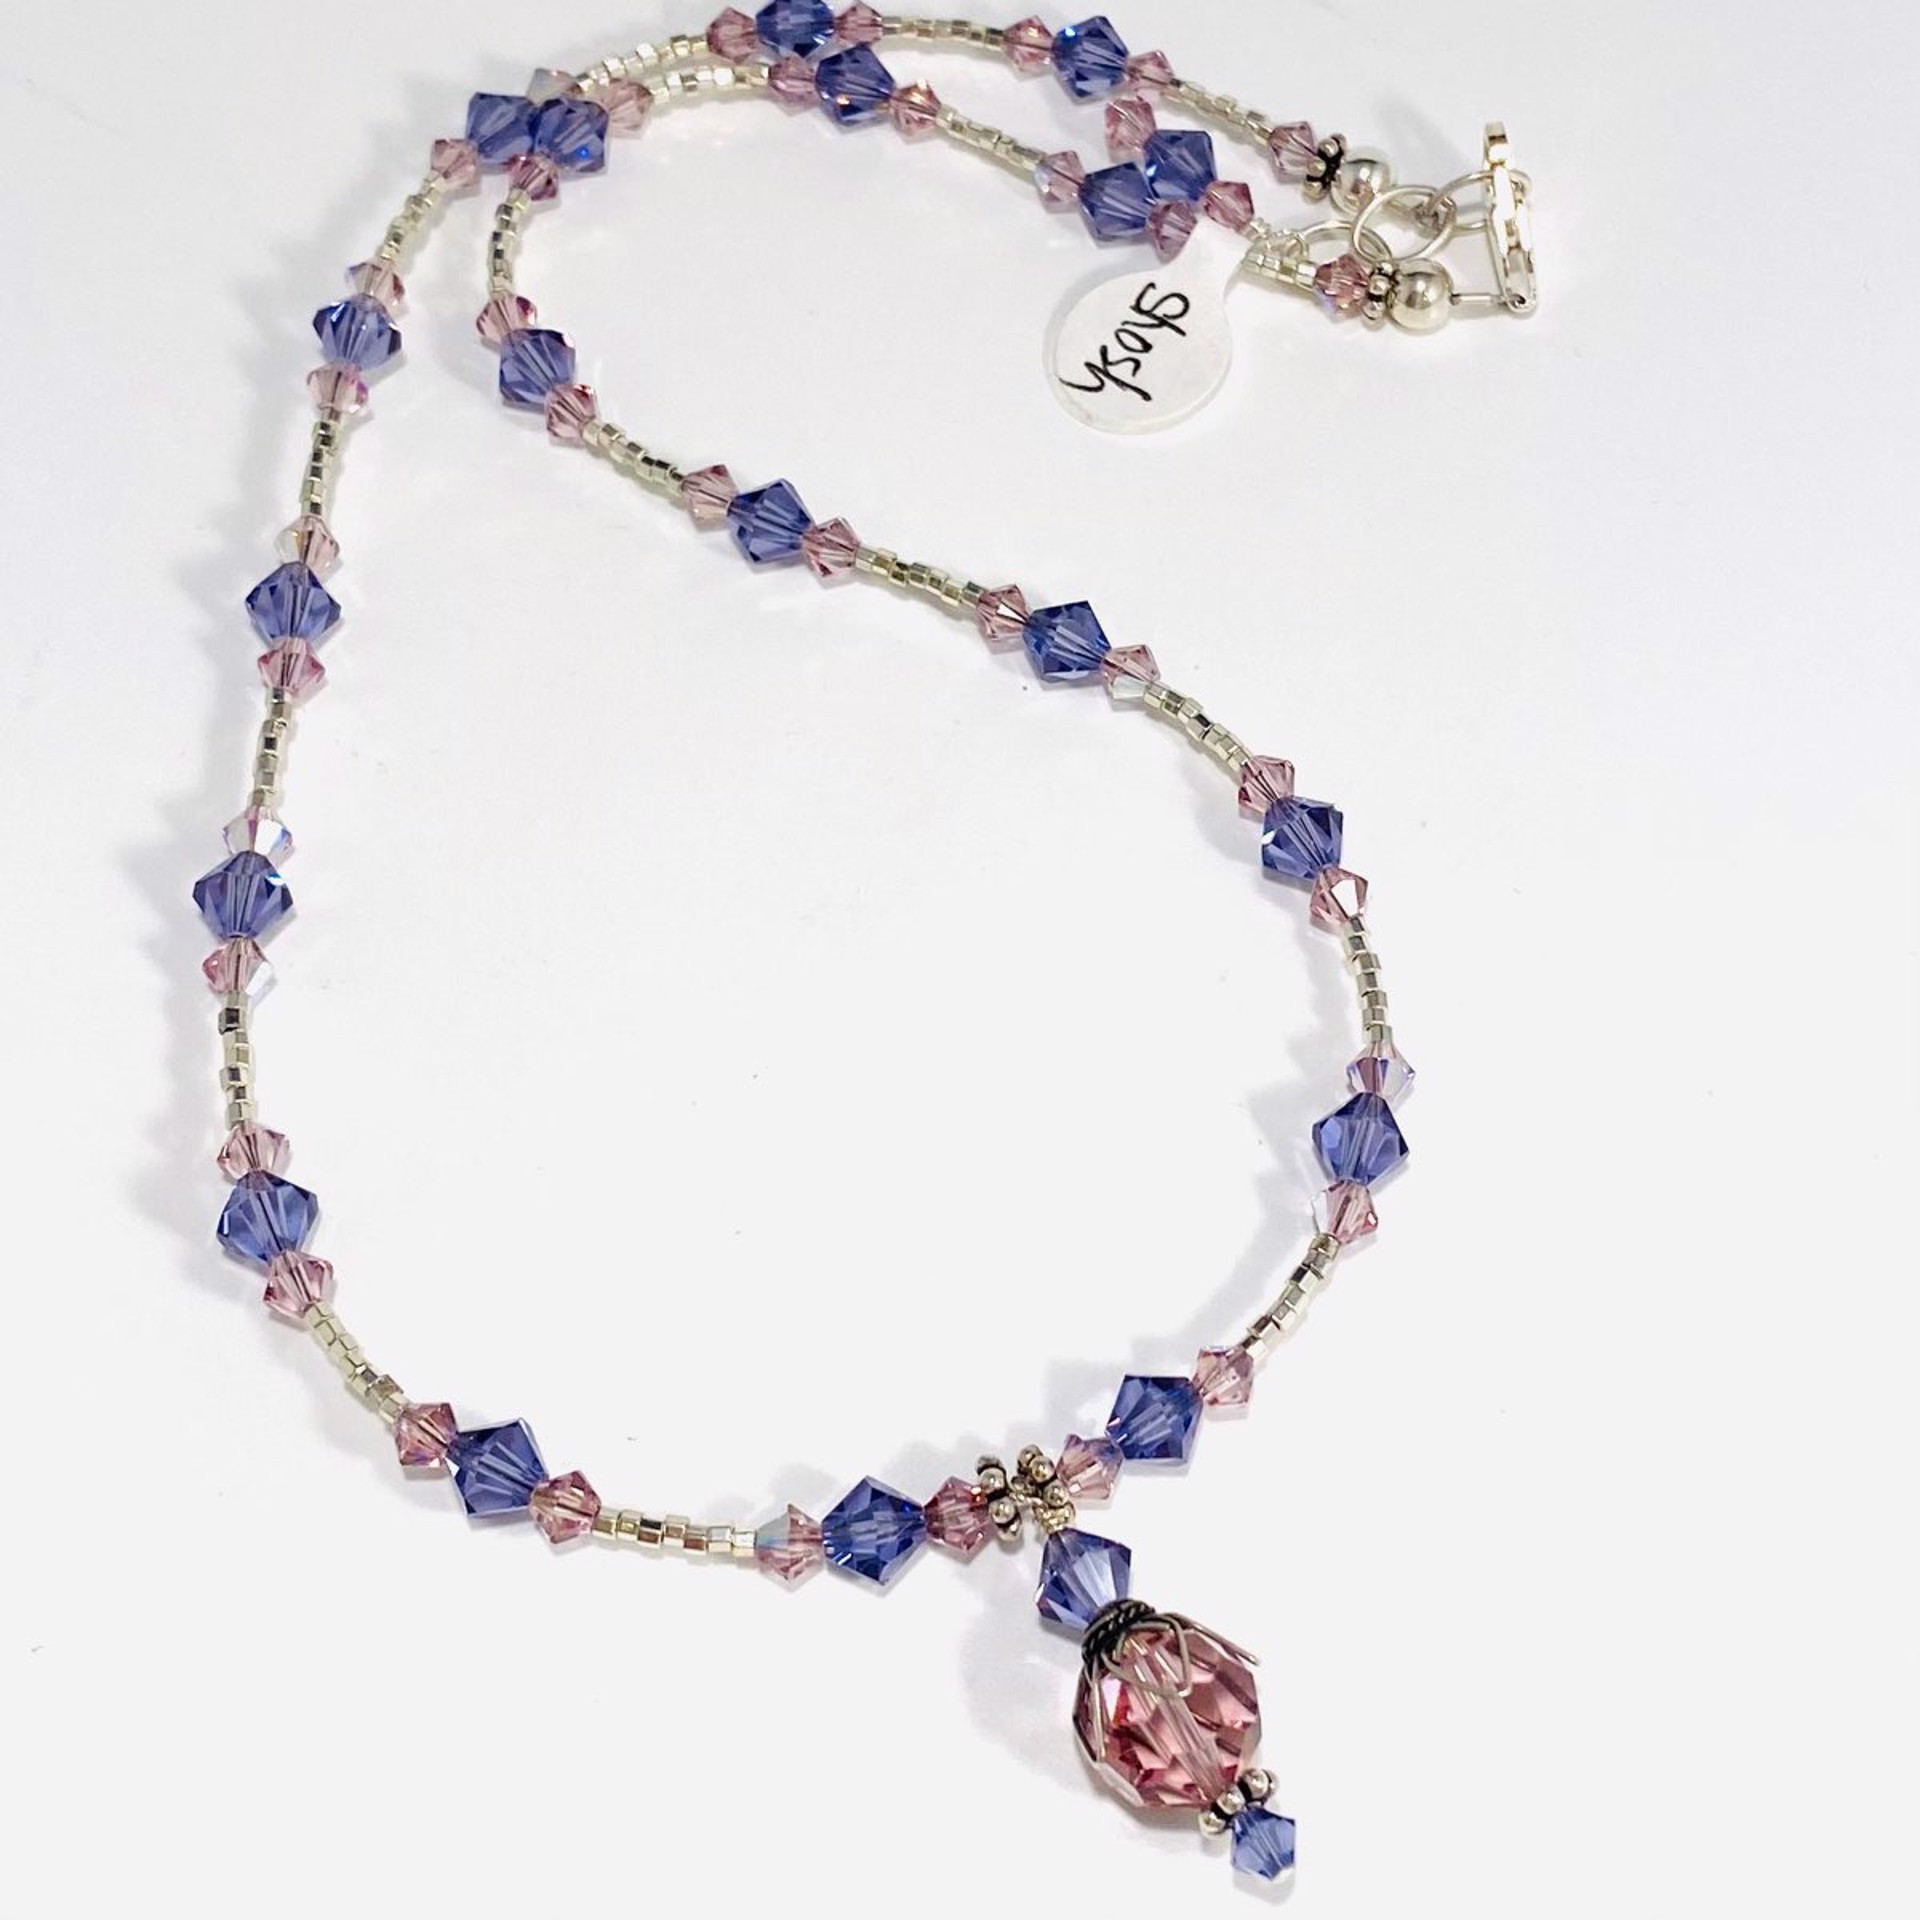 SHOSH22-11 Birthstone Necklace~June Alexanderite Swarovski Crystals by Shoshannah Weinisch